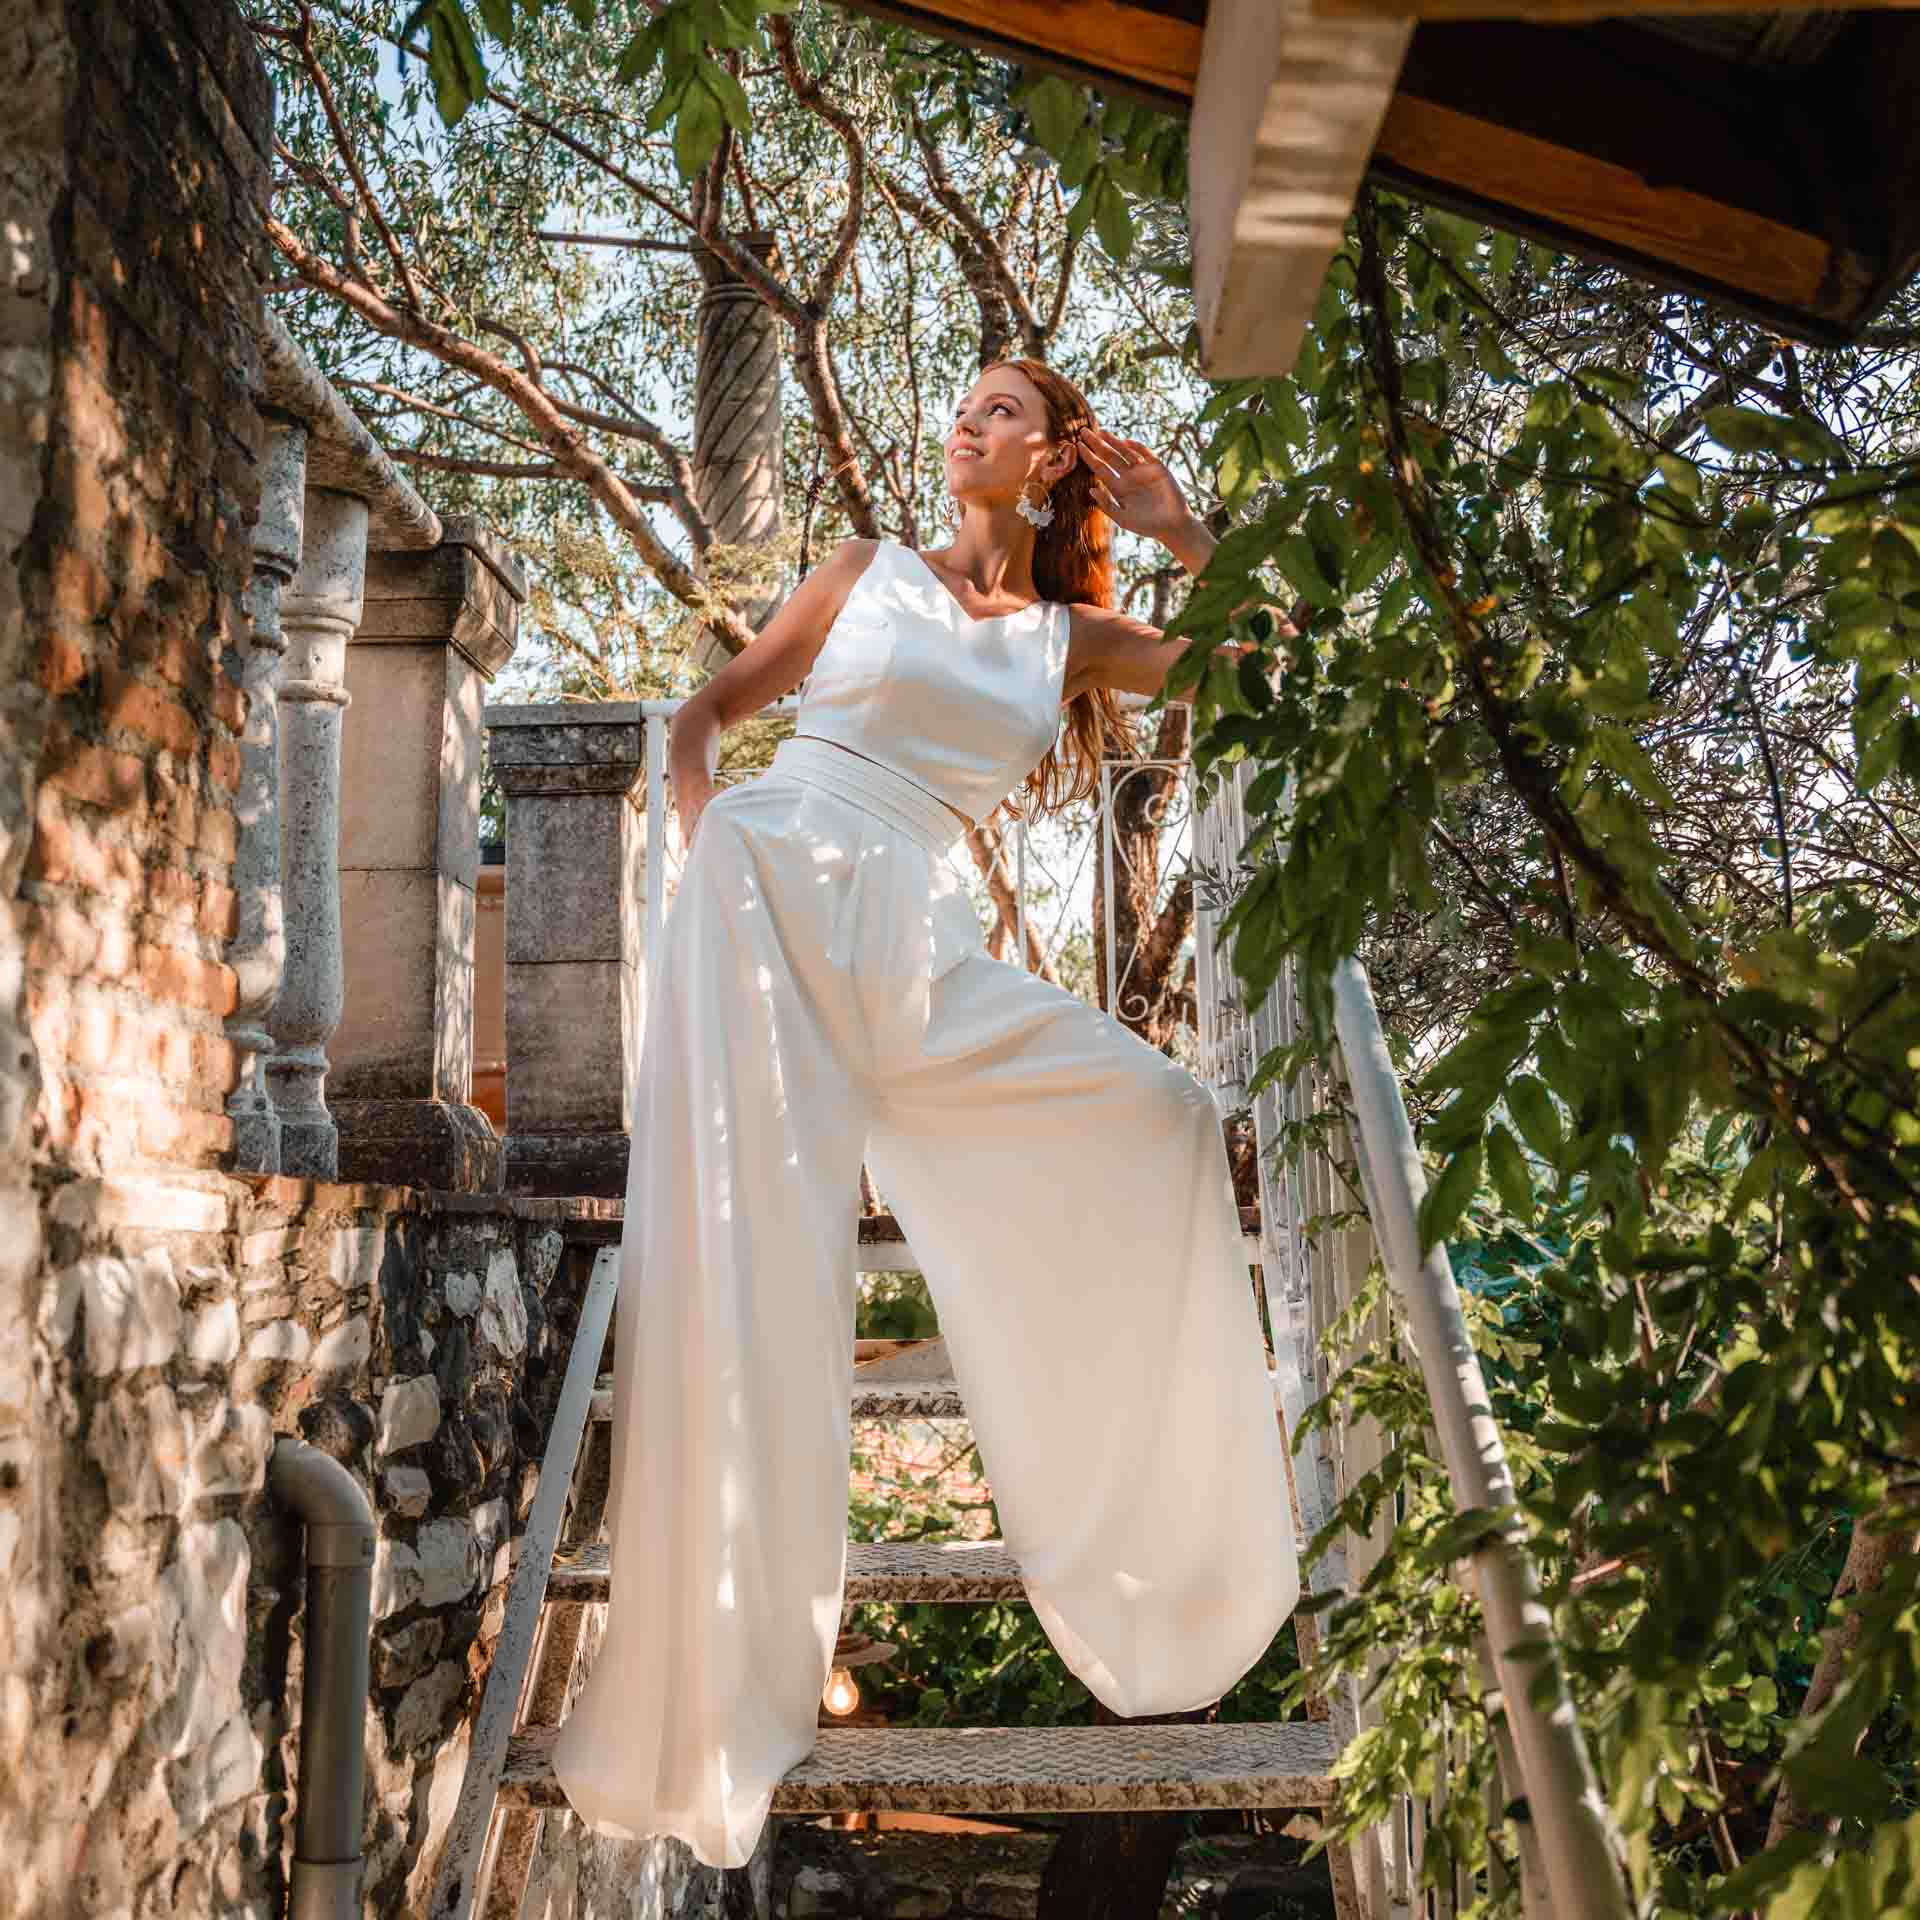 Brautmode für deine standesamtliche Trauung – moderne Hose kombiniert mit stylischem Braut Top